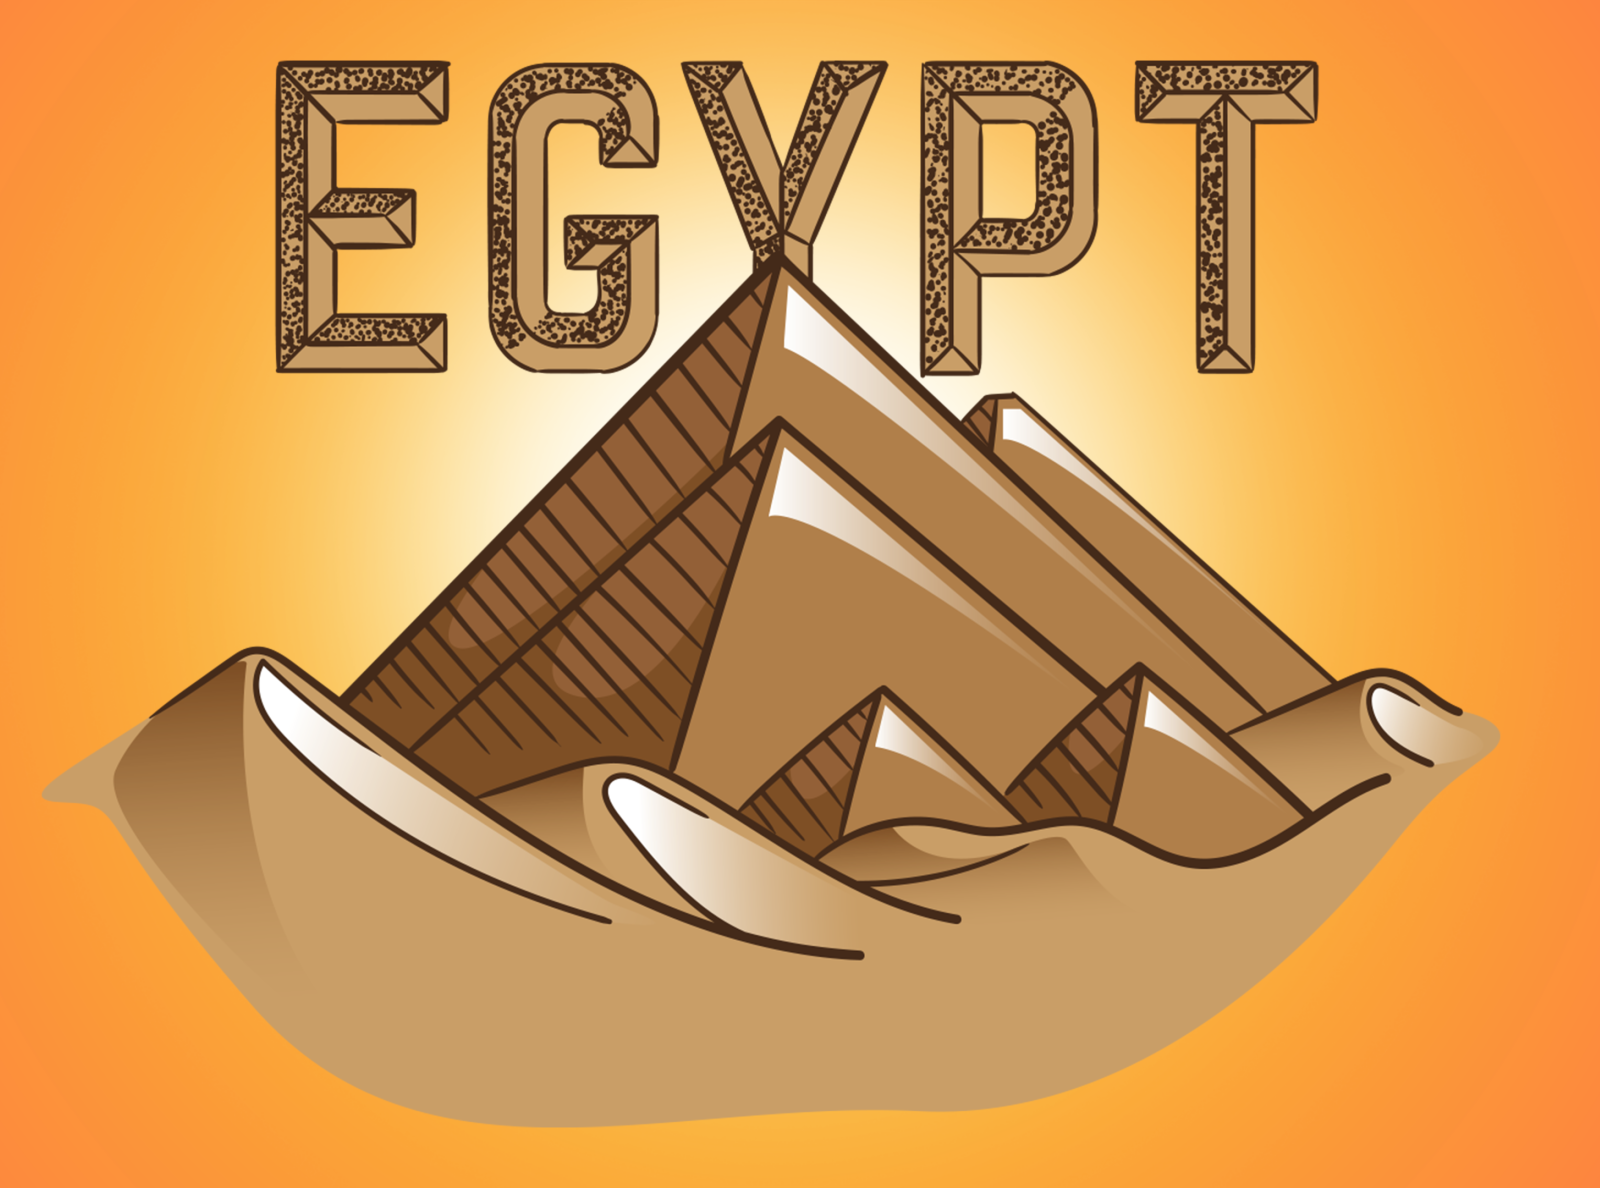 Egypt - Adidas Office adidas desert egypt graphic design illustration j.tito gouveia jtitogouveia pyramid pyramids sand typography vector